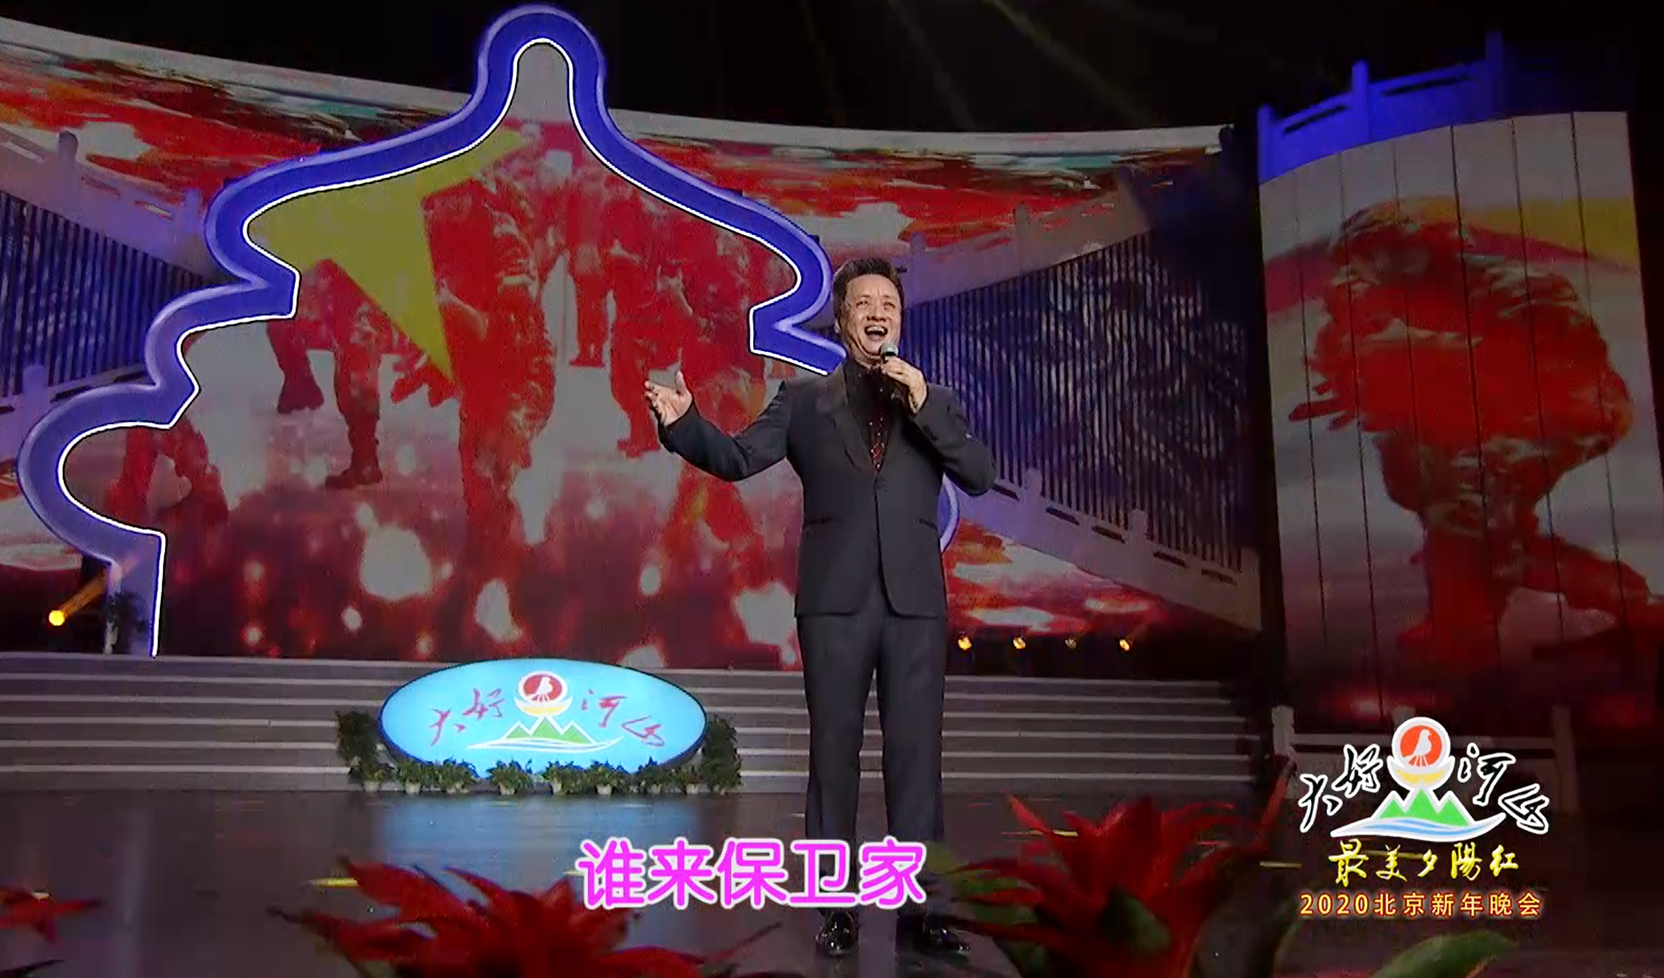 大好河山2020北京“最美夕阳红”新年晚会 歌曲《说句心里话》阎维文